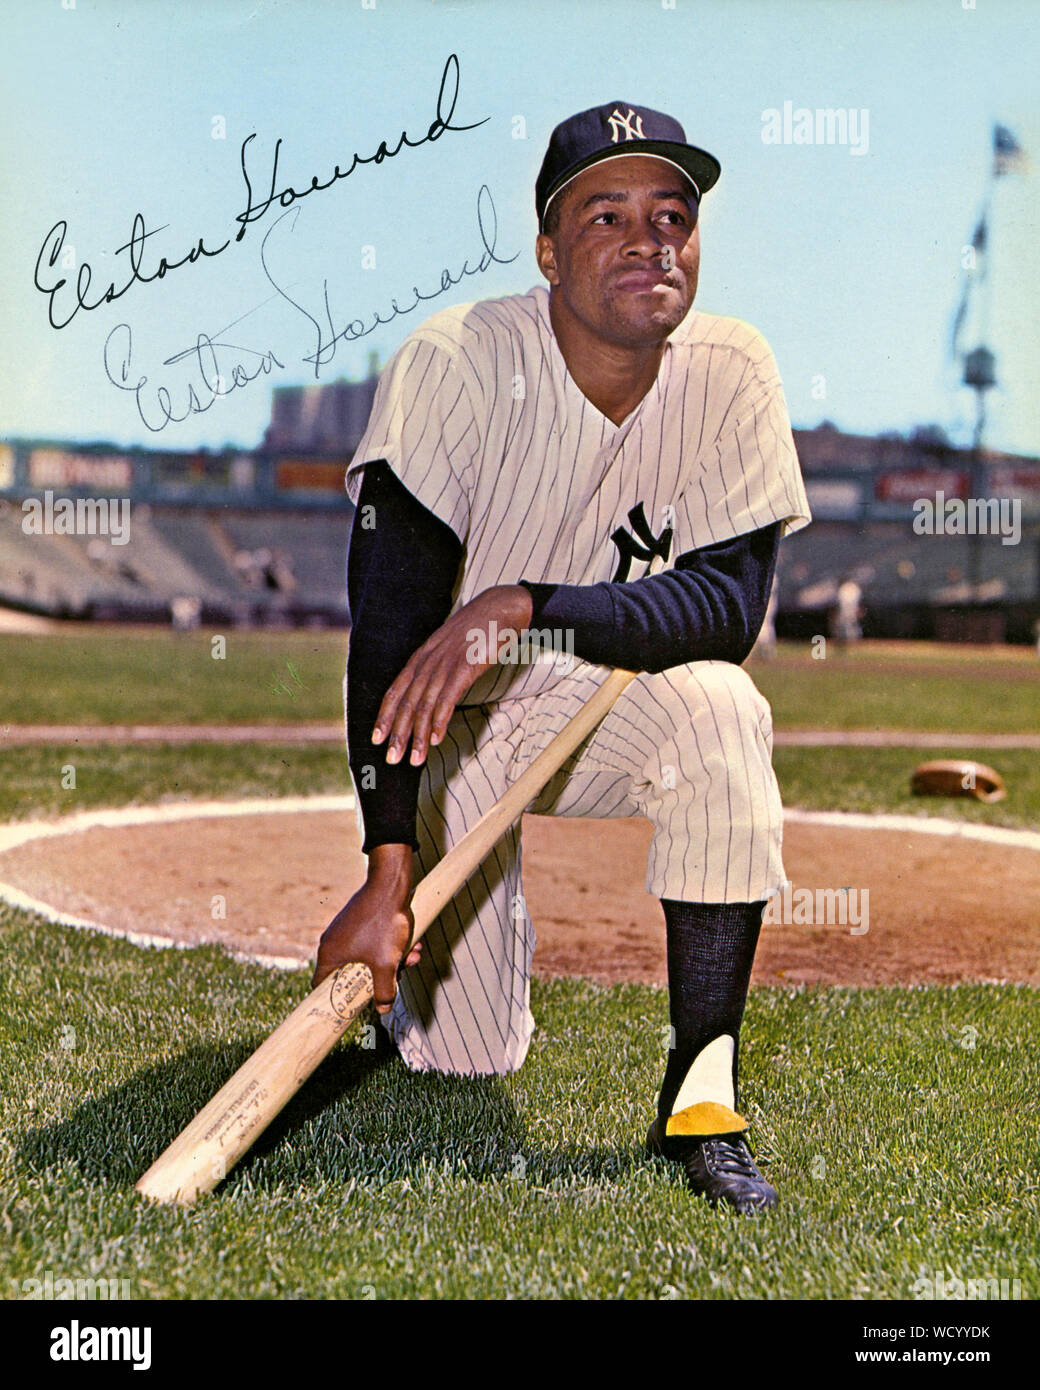 Chandails photo couleur de Elston Howard qui était une star de baseball avec les Yankees de New York dans les années 1950 et 1960. Banque D'Images